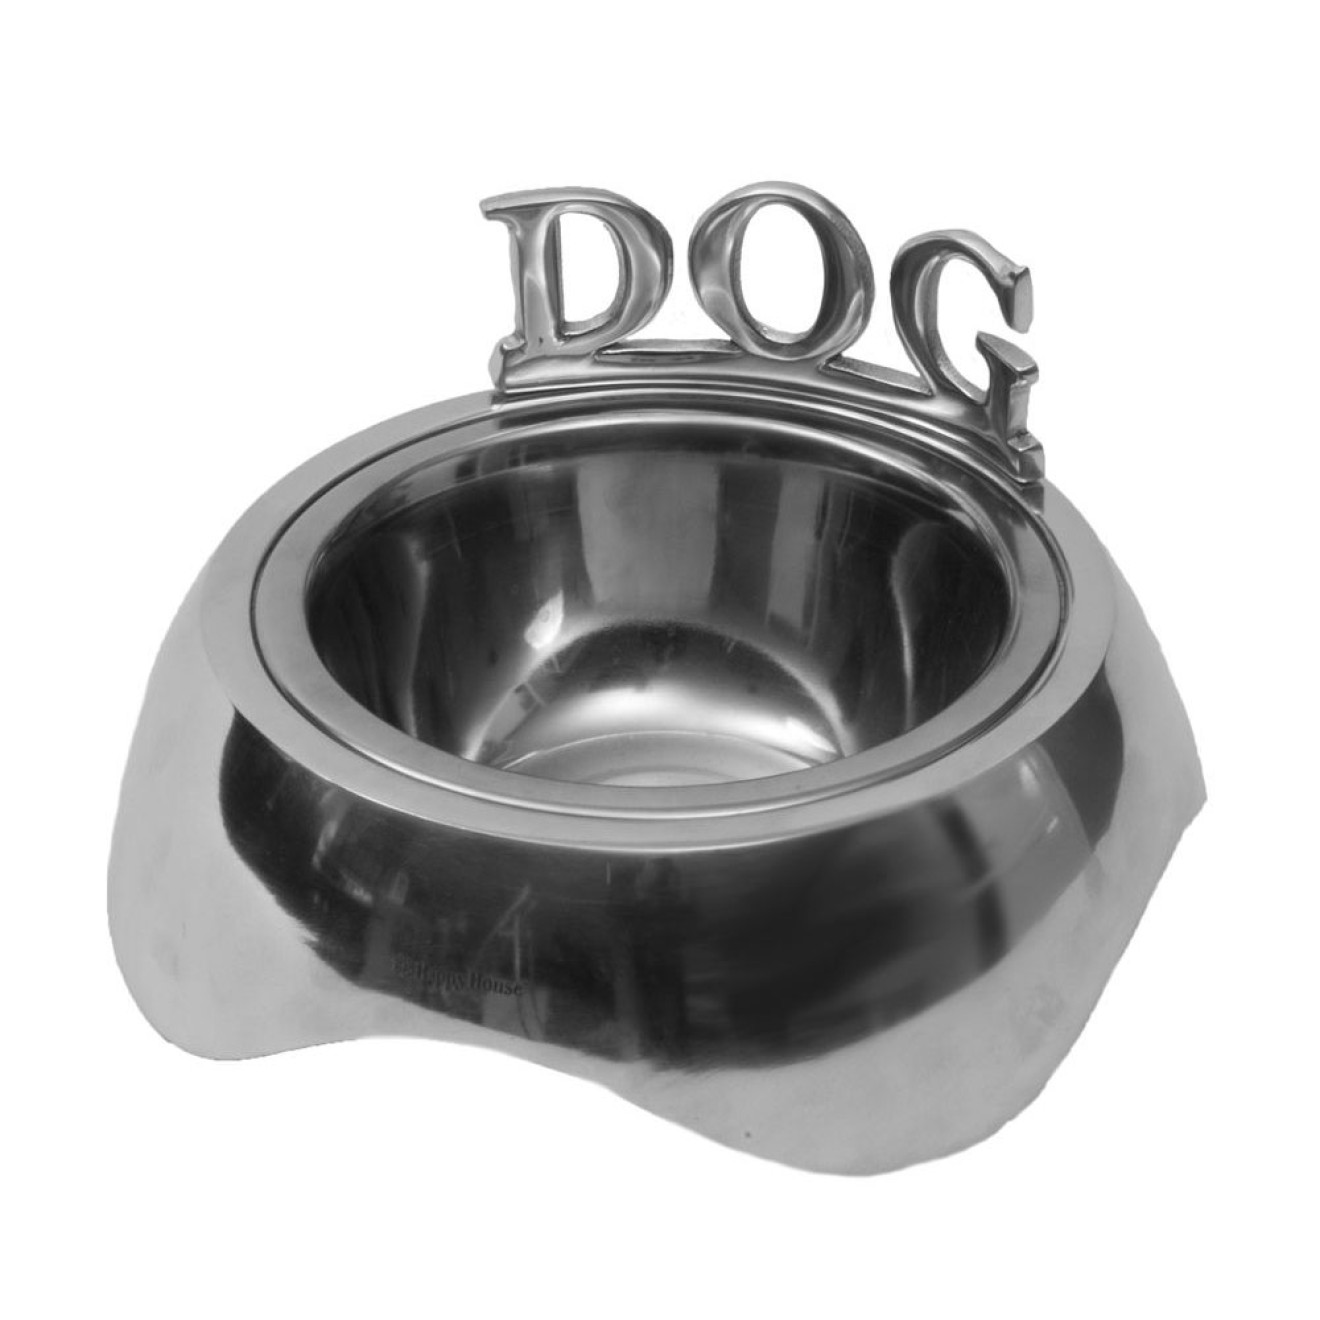 Aluminium-Hundenapf DOG in 2 Größen